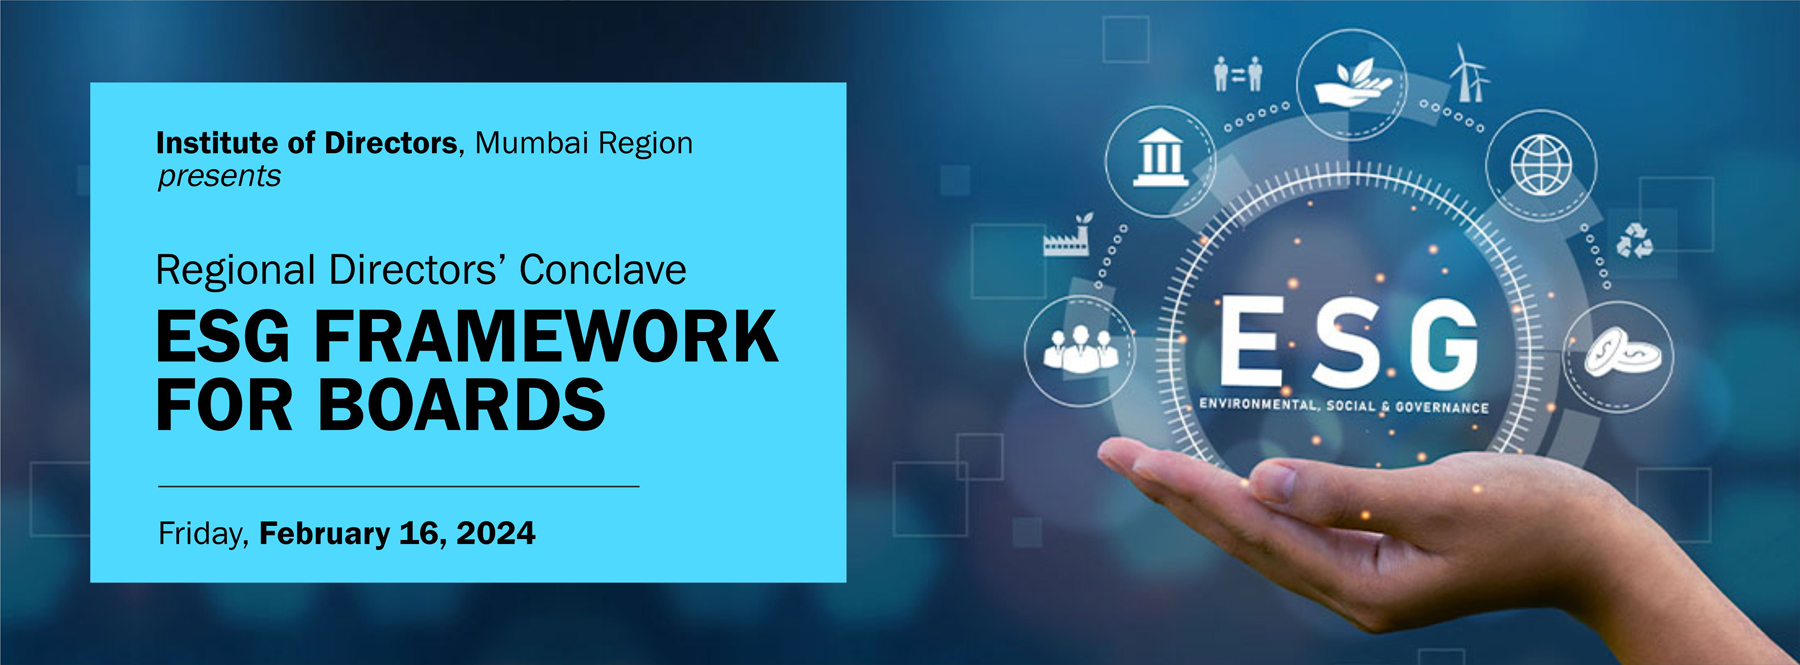 Regional Directors’ Conclave 2024 - ESG Framework For Boards